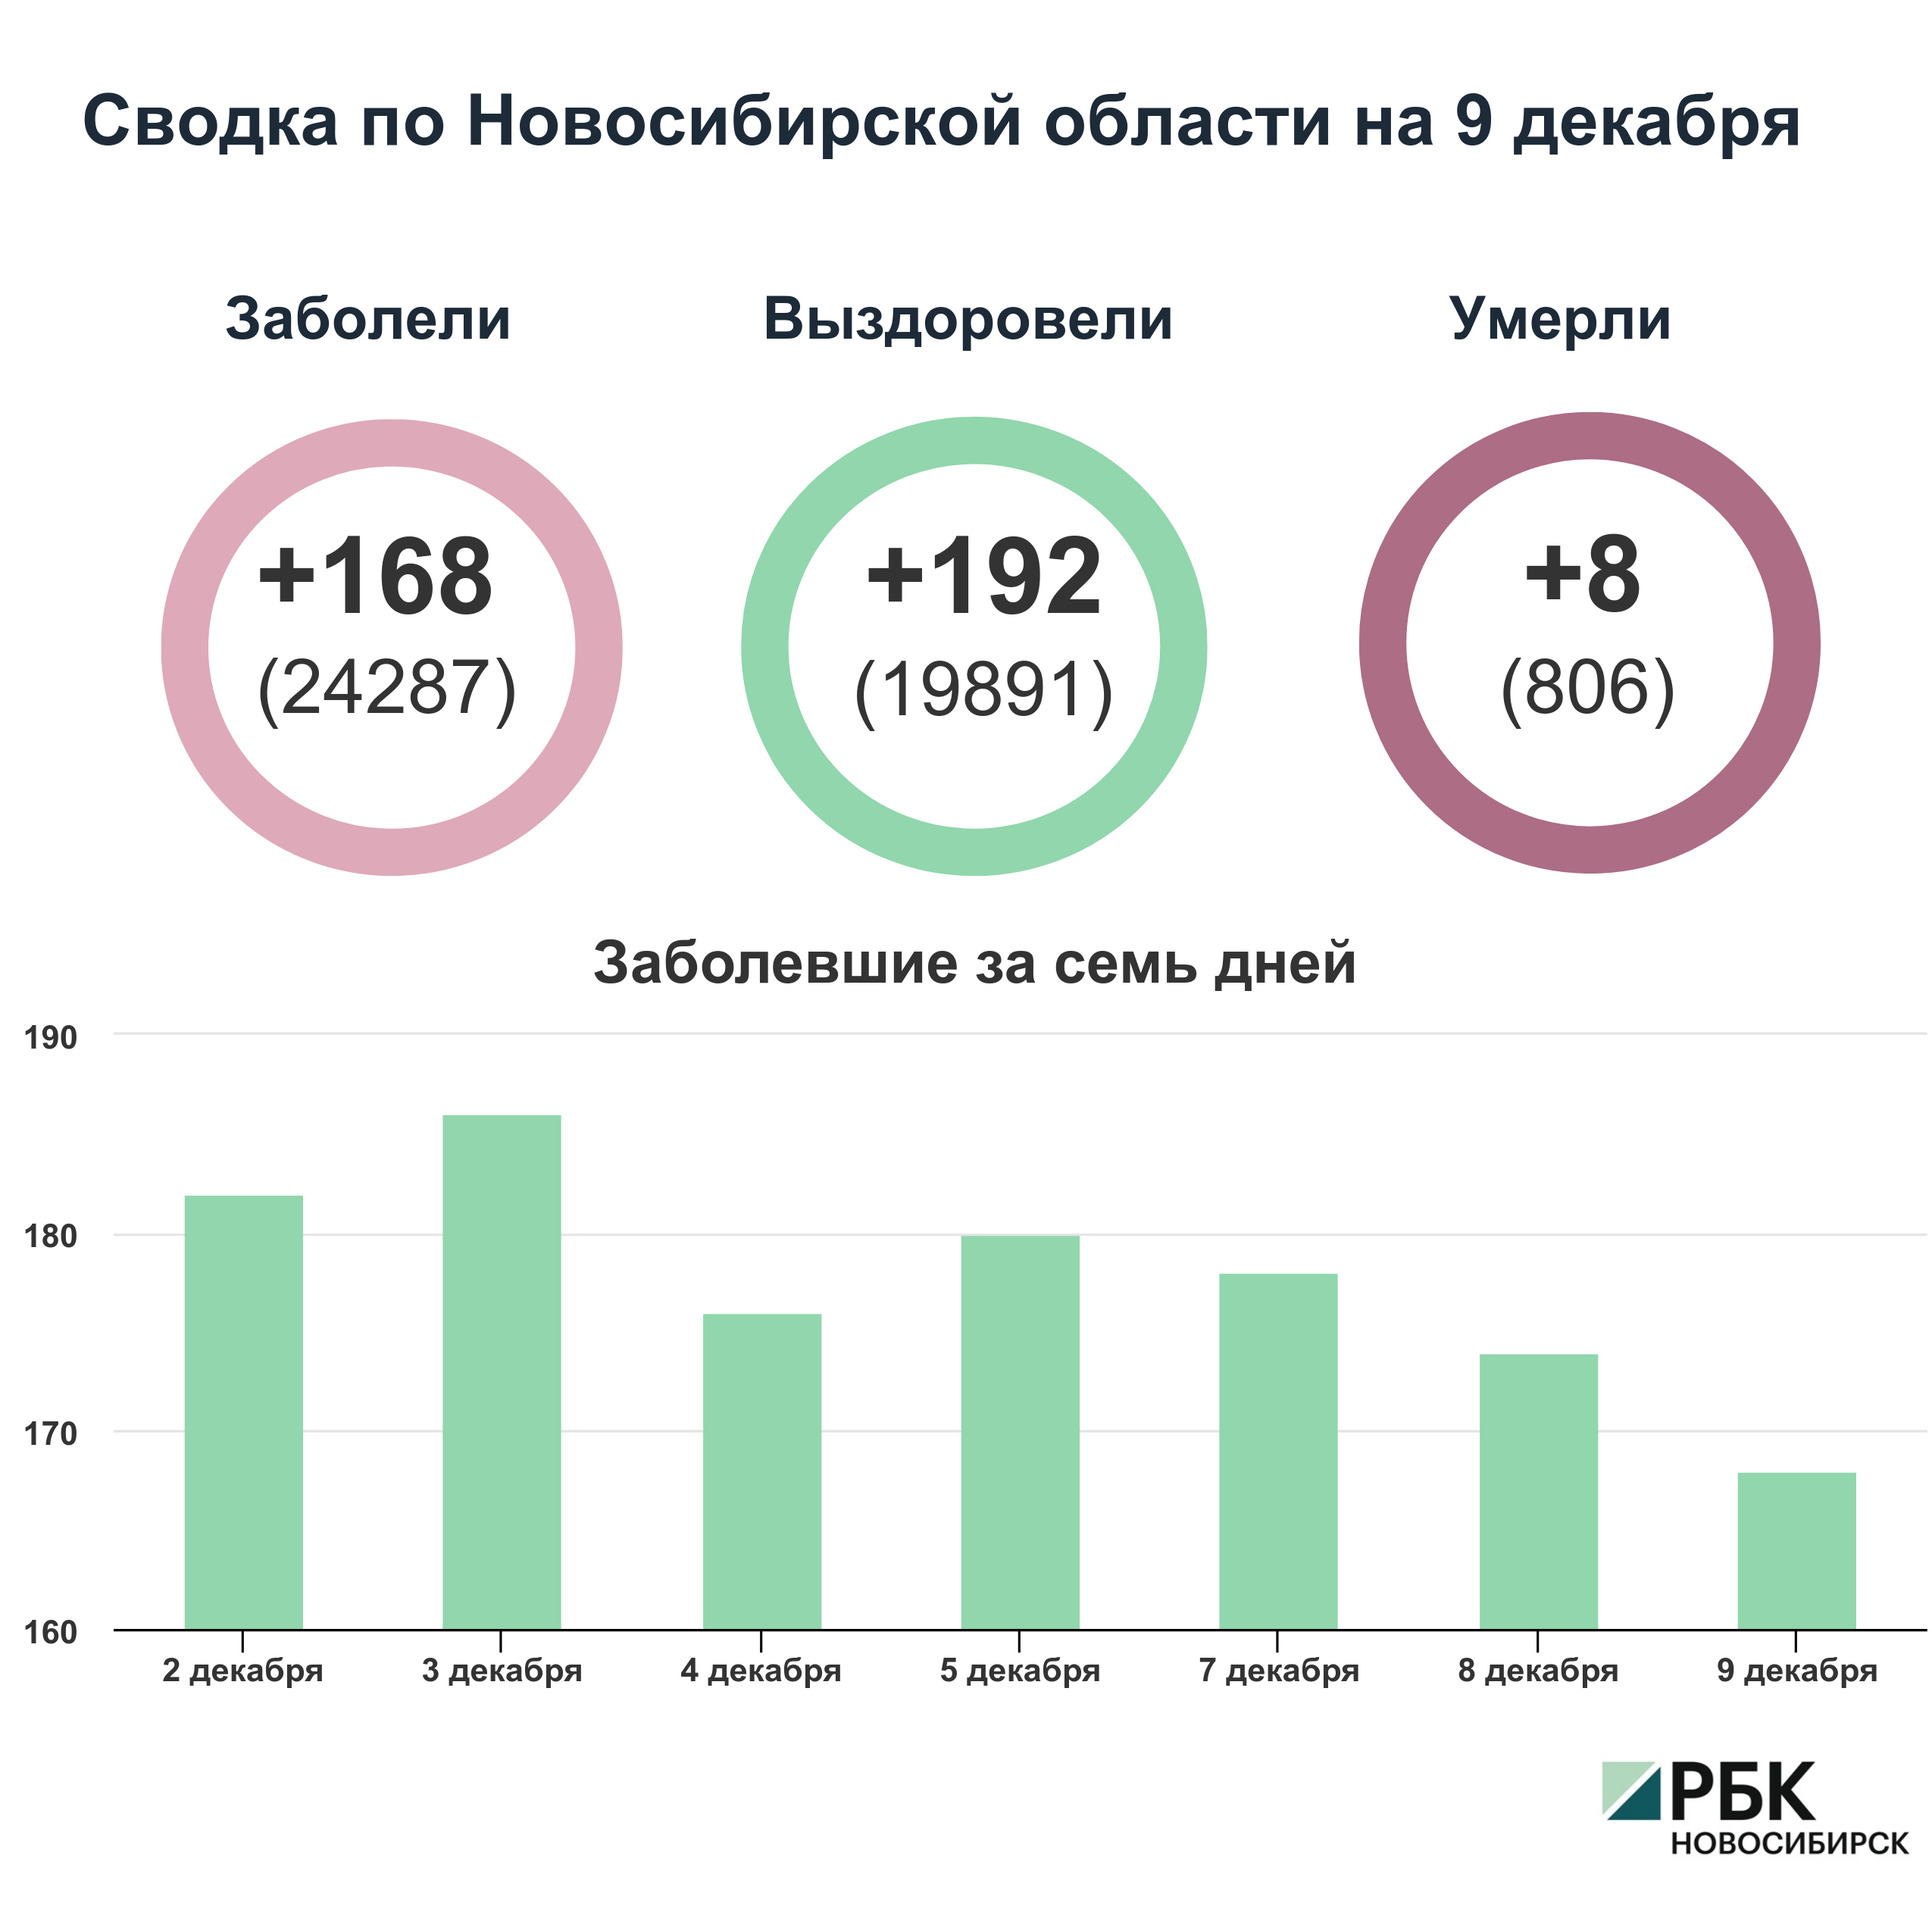 Коронавирус в Новосибирске: сводка на 9 декабря